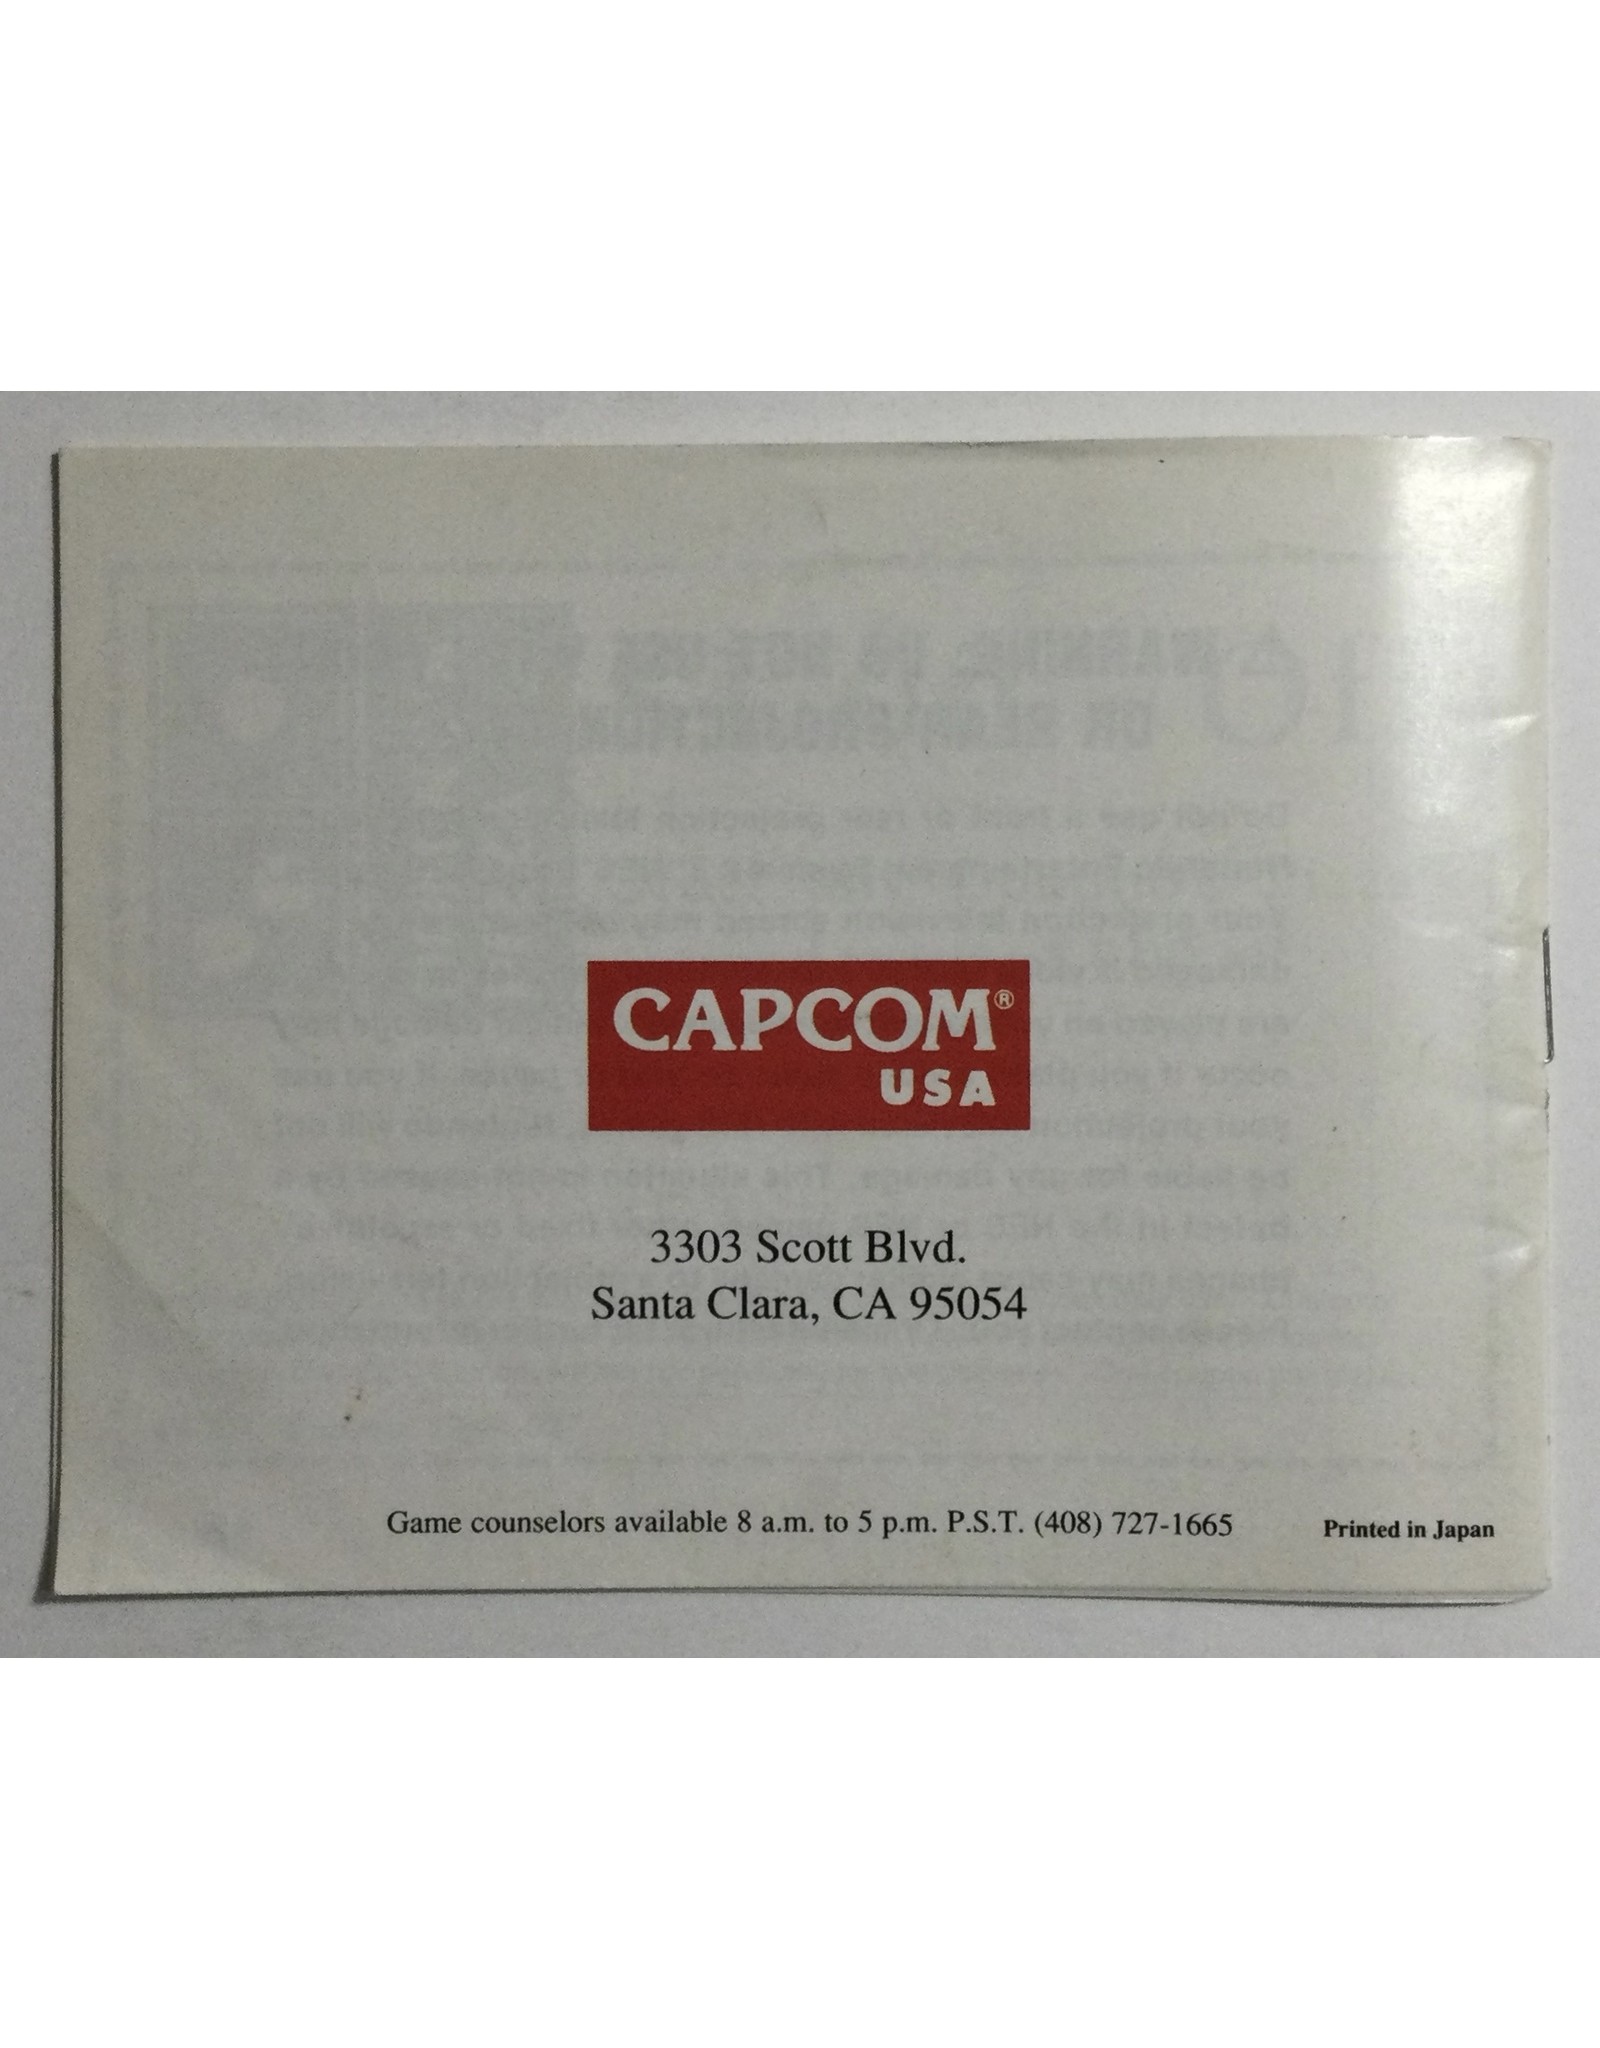 CAPCOM YO! NOID for Nintendo Entertainment System (NES) - CIB